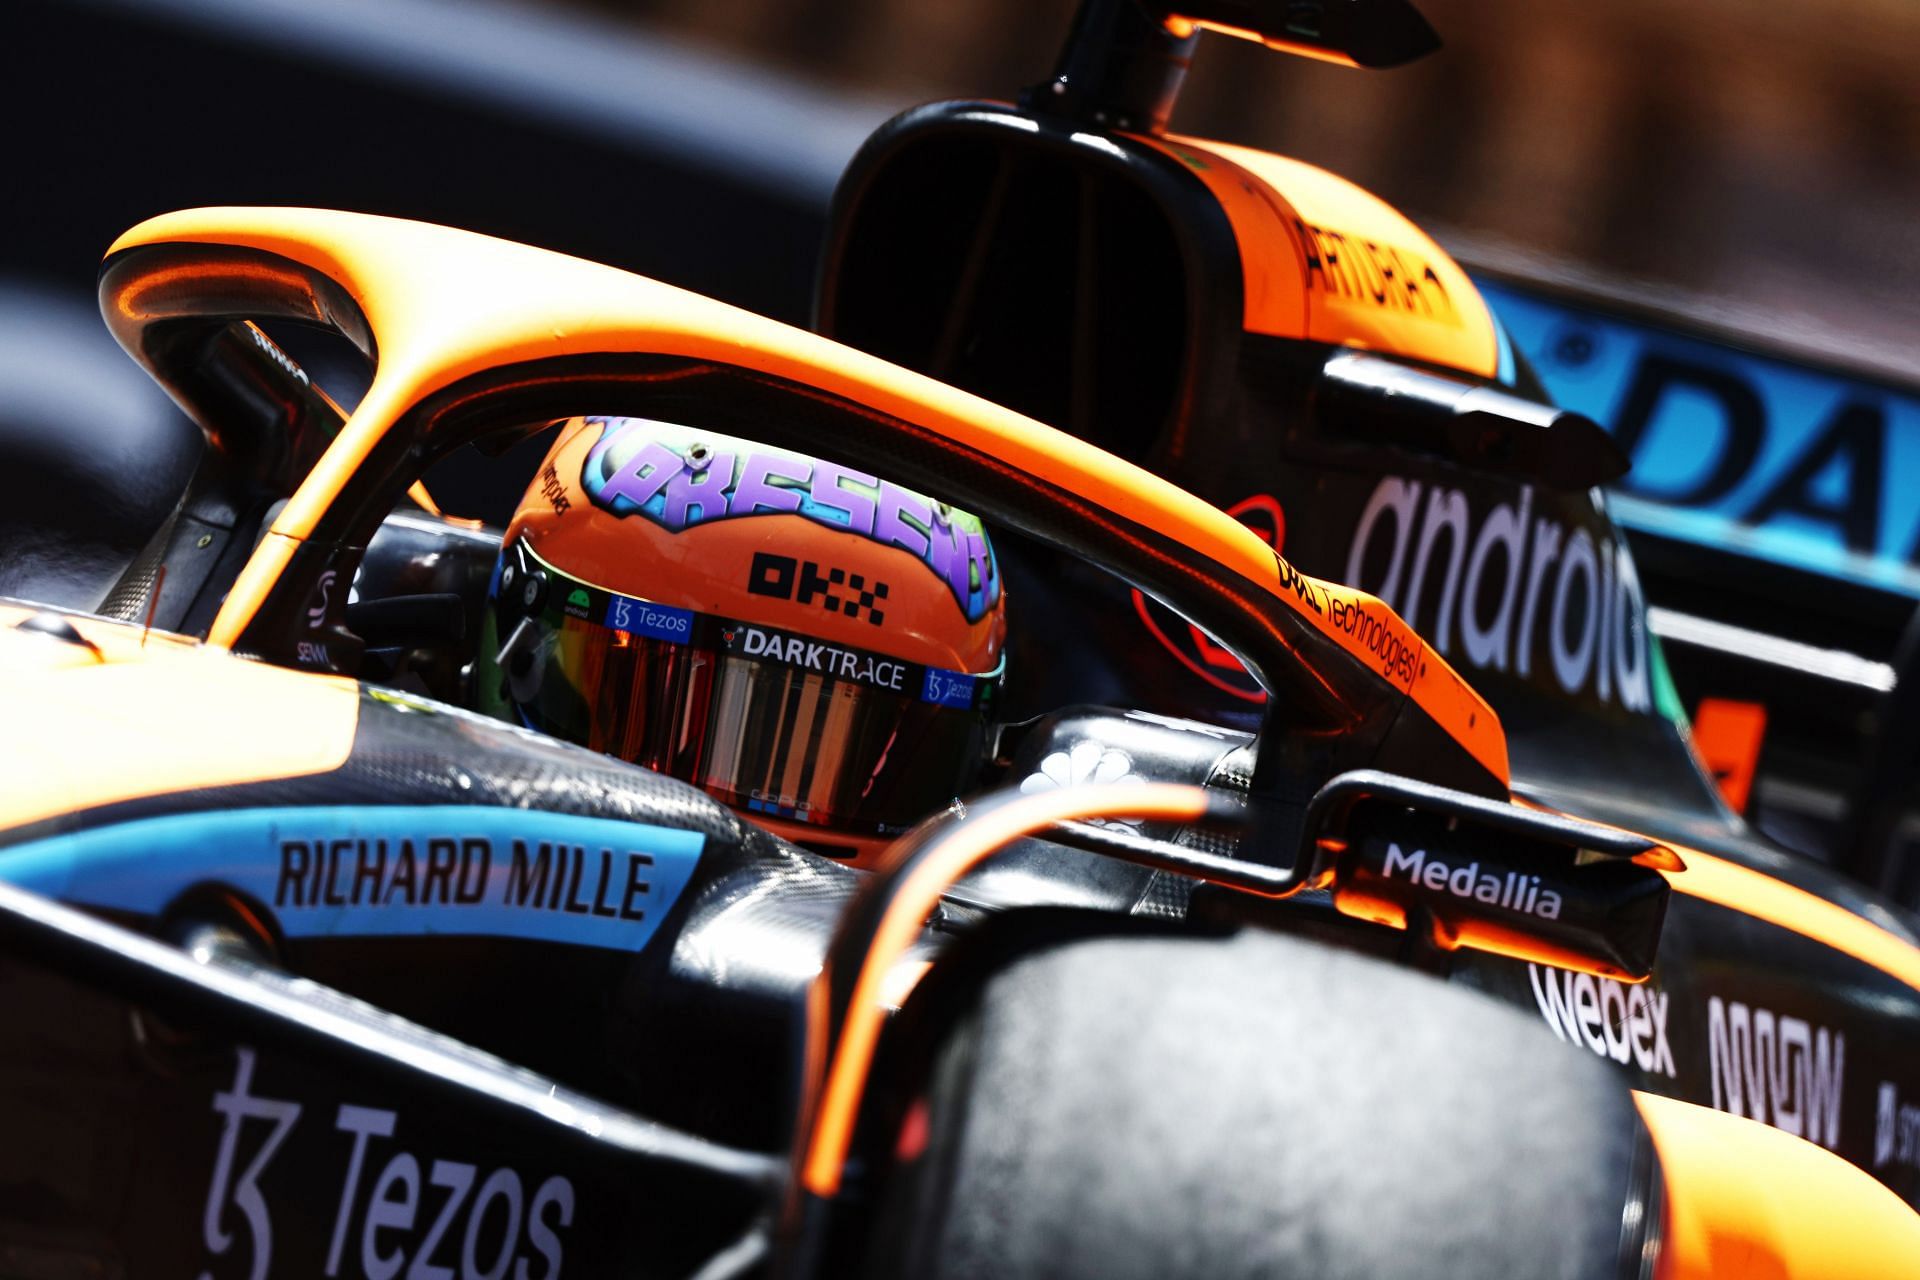 F1 Grand Prix of Monaco - Final Practice - Daniel Ricciardo fails to make it out of Q2.